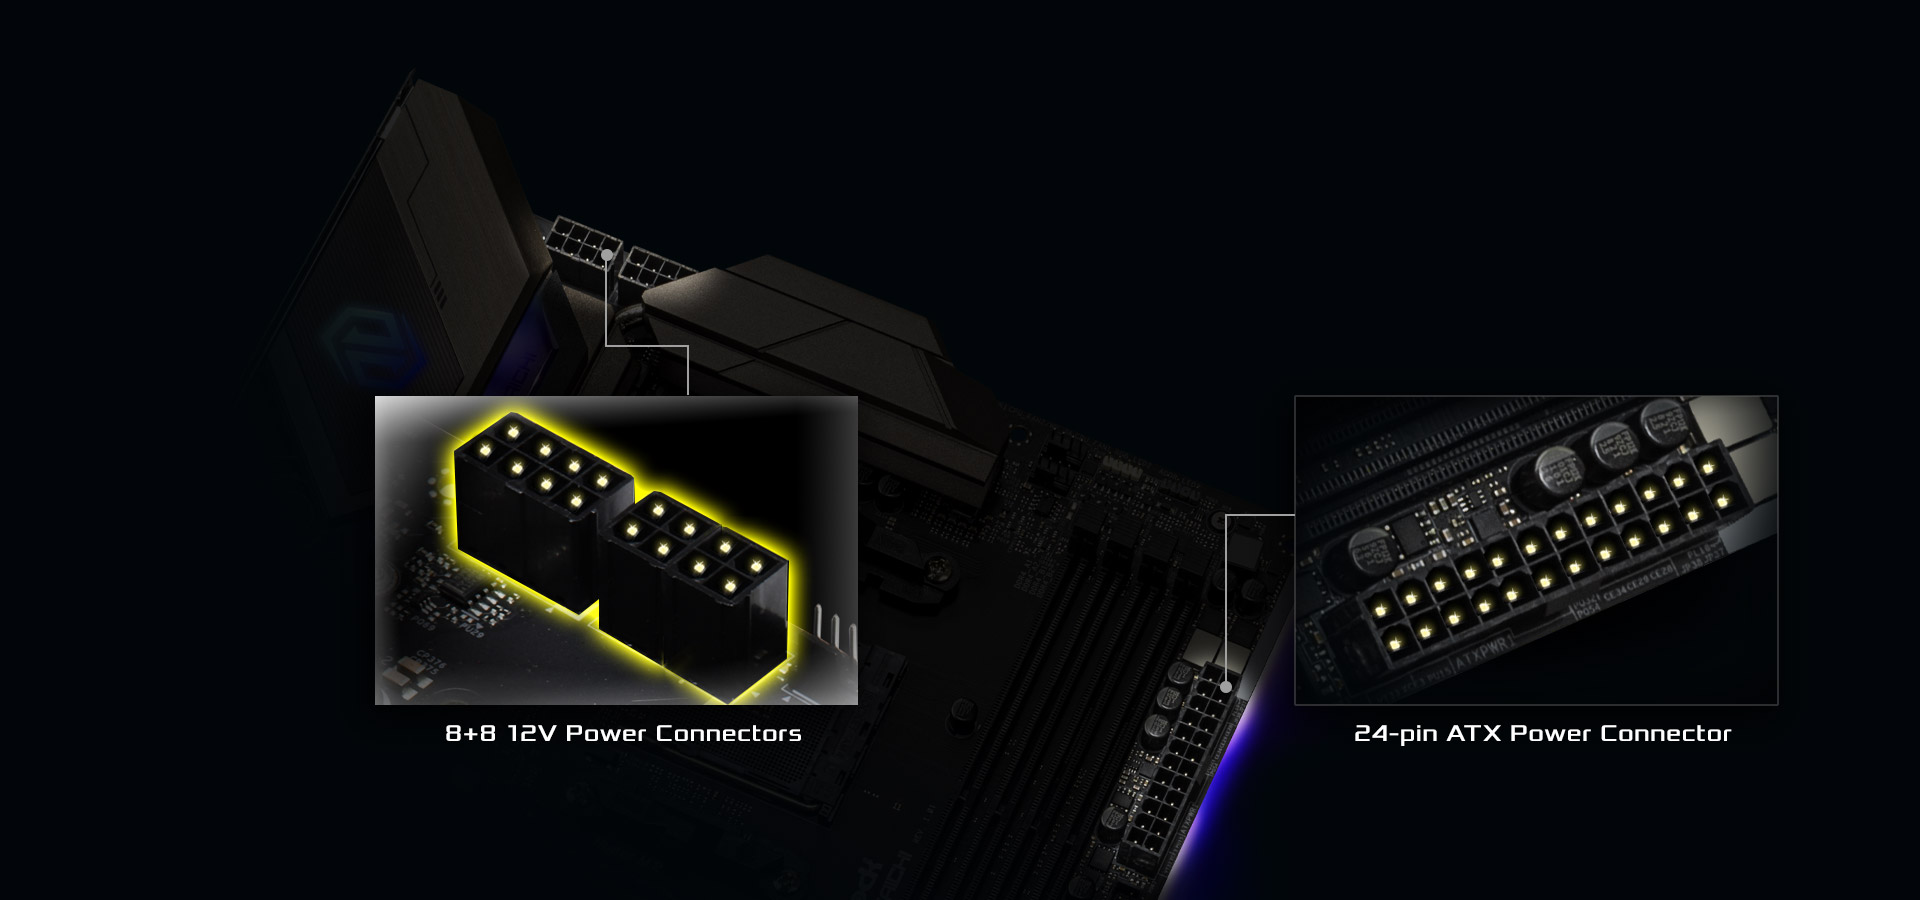 HiDensityPowerConnector-B550 of the motherboard